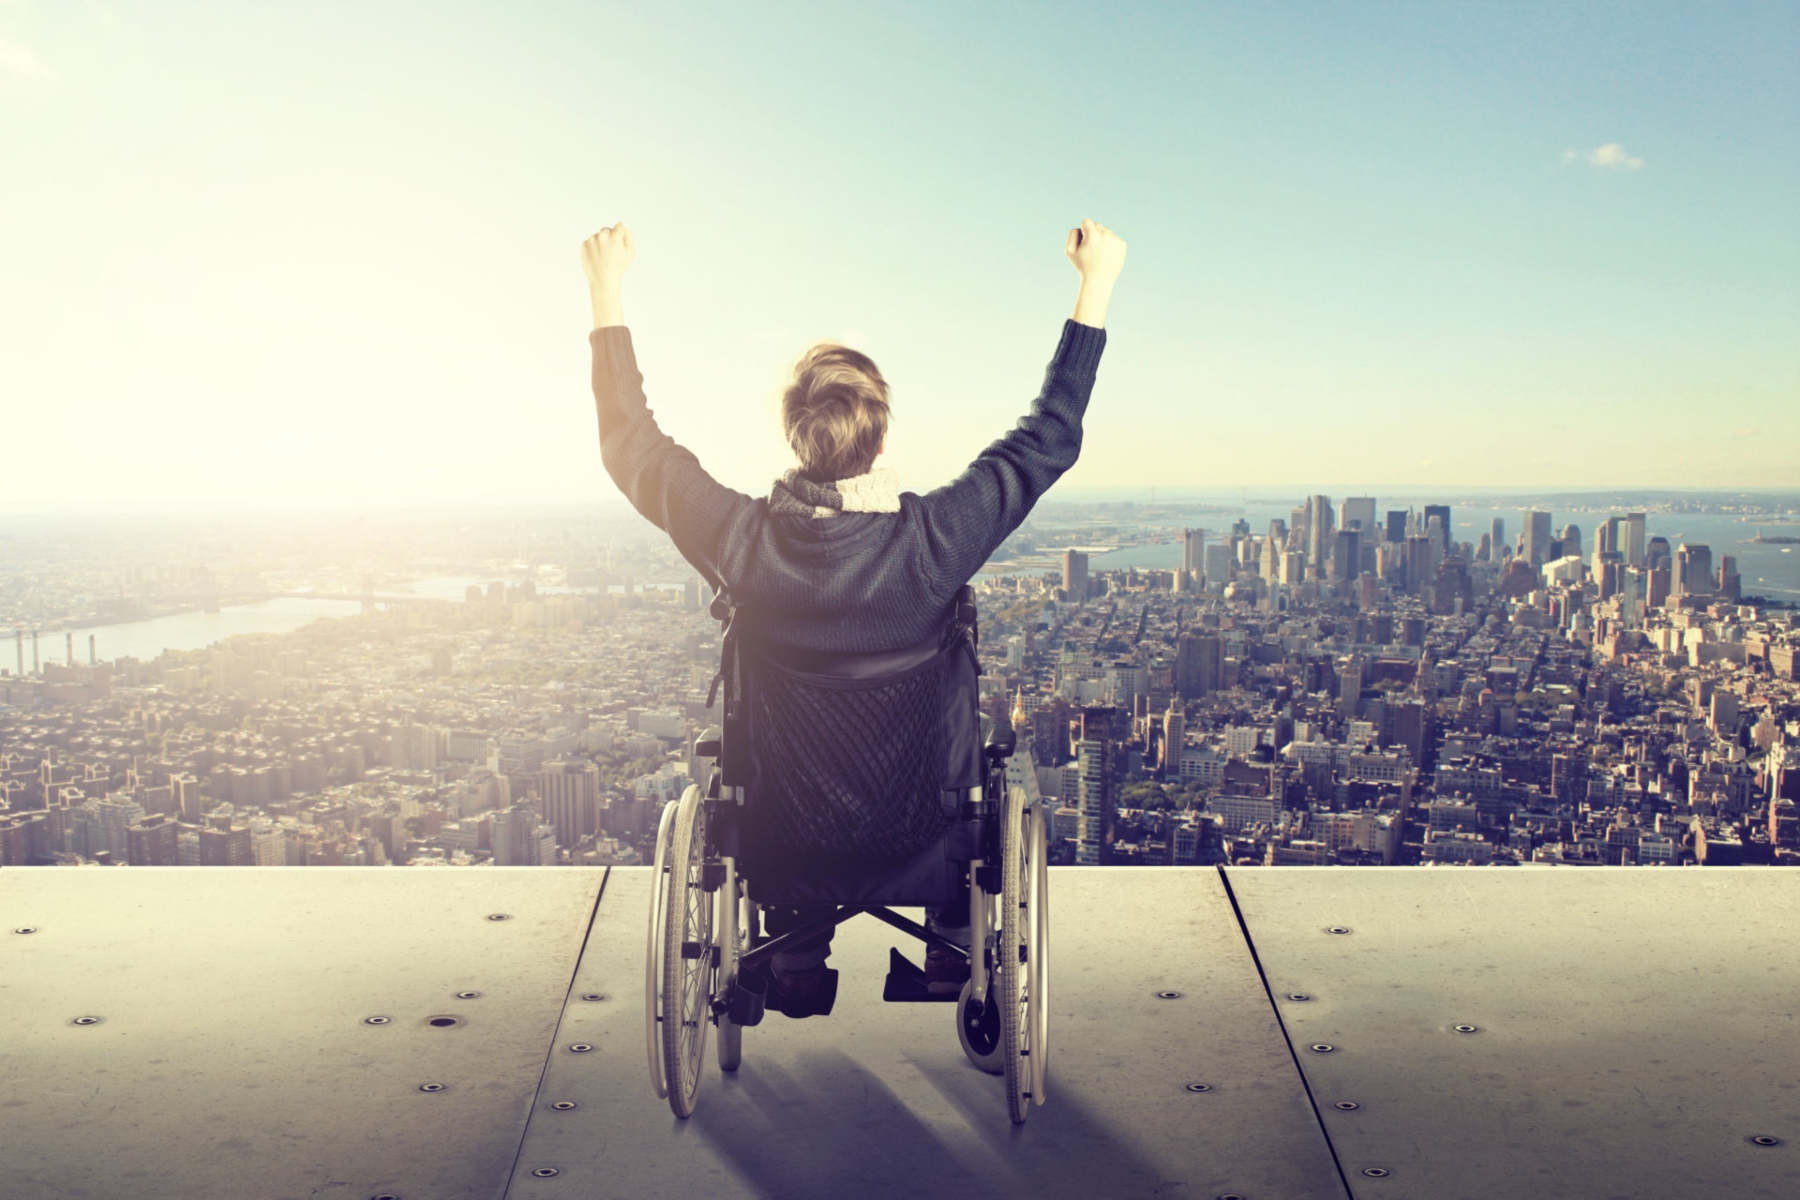 ΕΣΑμεΑ: Συνεχίζεται ο αποκλεισμός των ατόμων με αναπηρία από το «Τουρισμός για όλους»